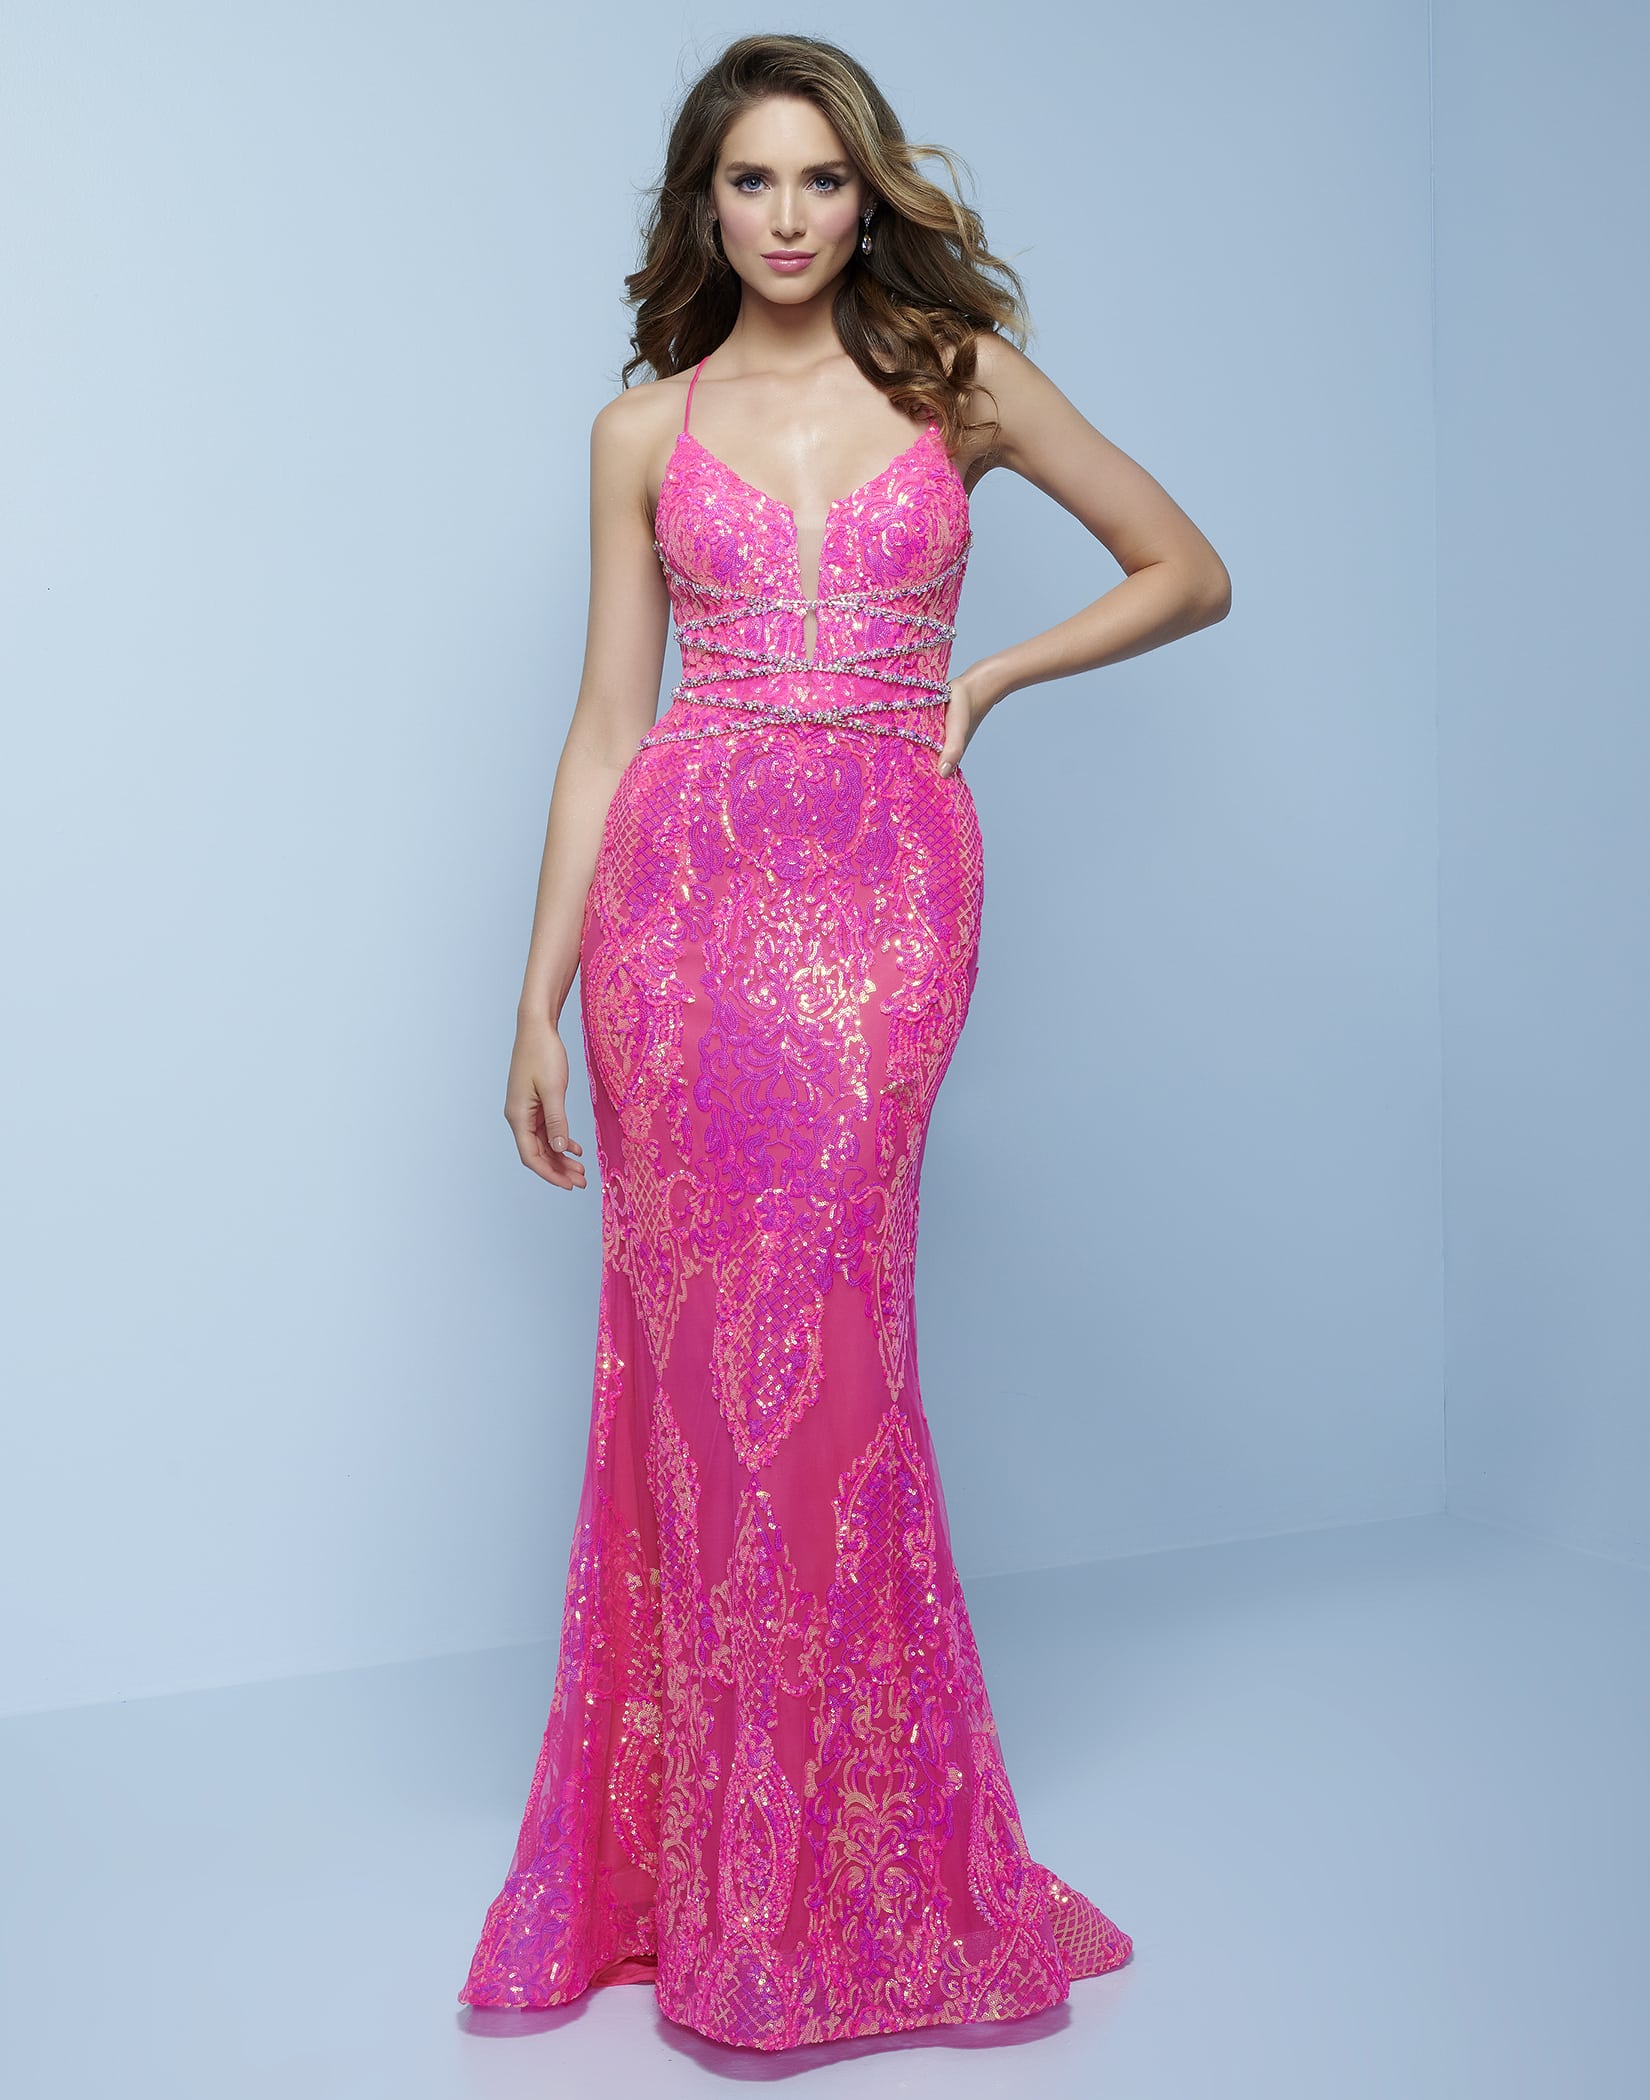 Iridescent Prom Dress Light Pink Dress Light Pink Sparkly Dress